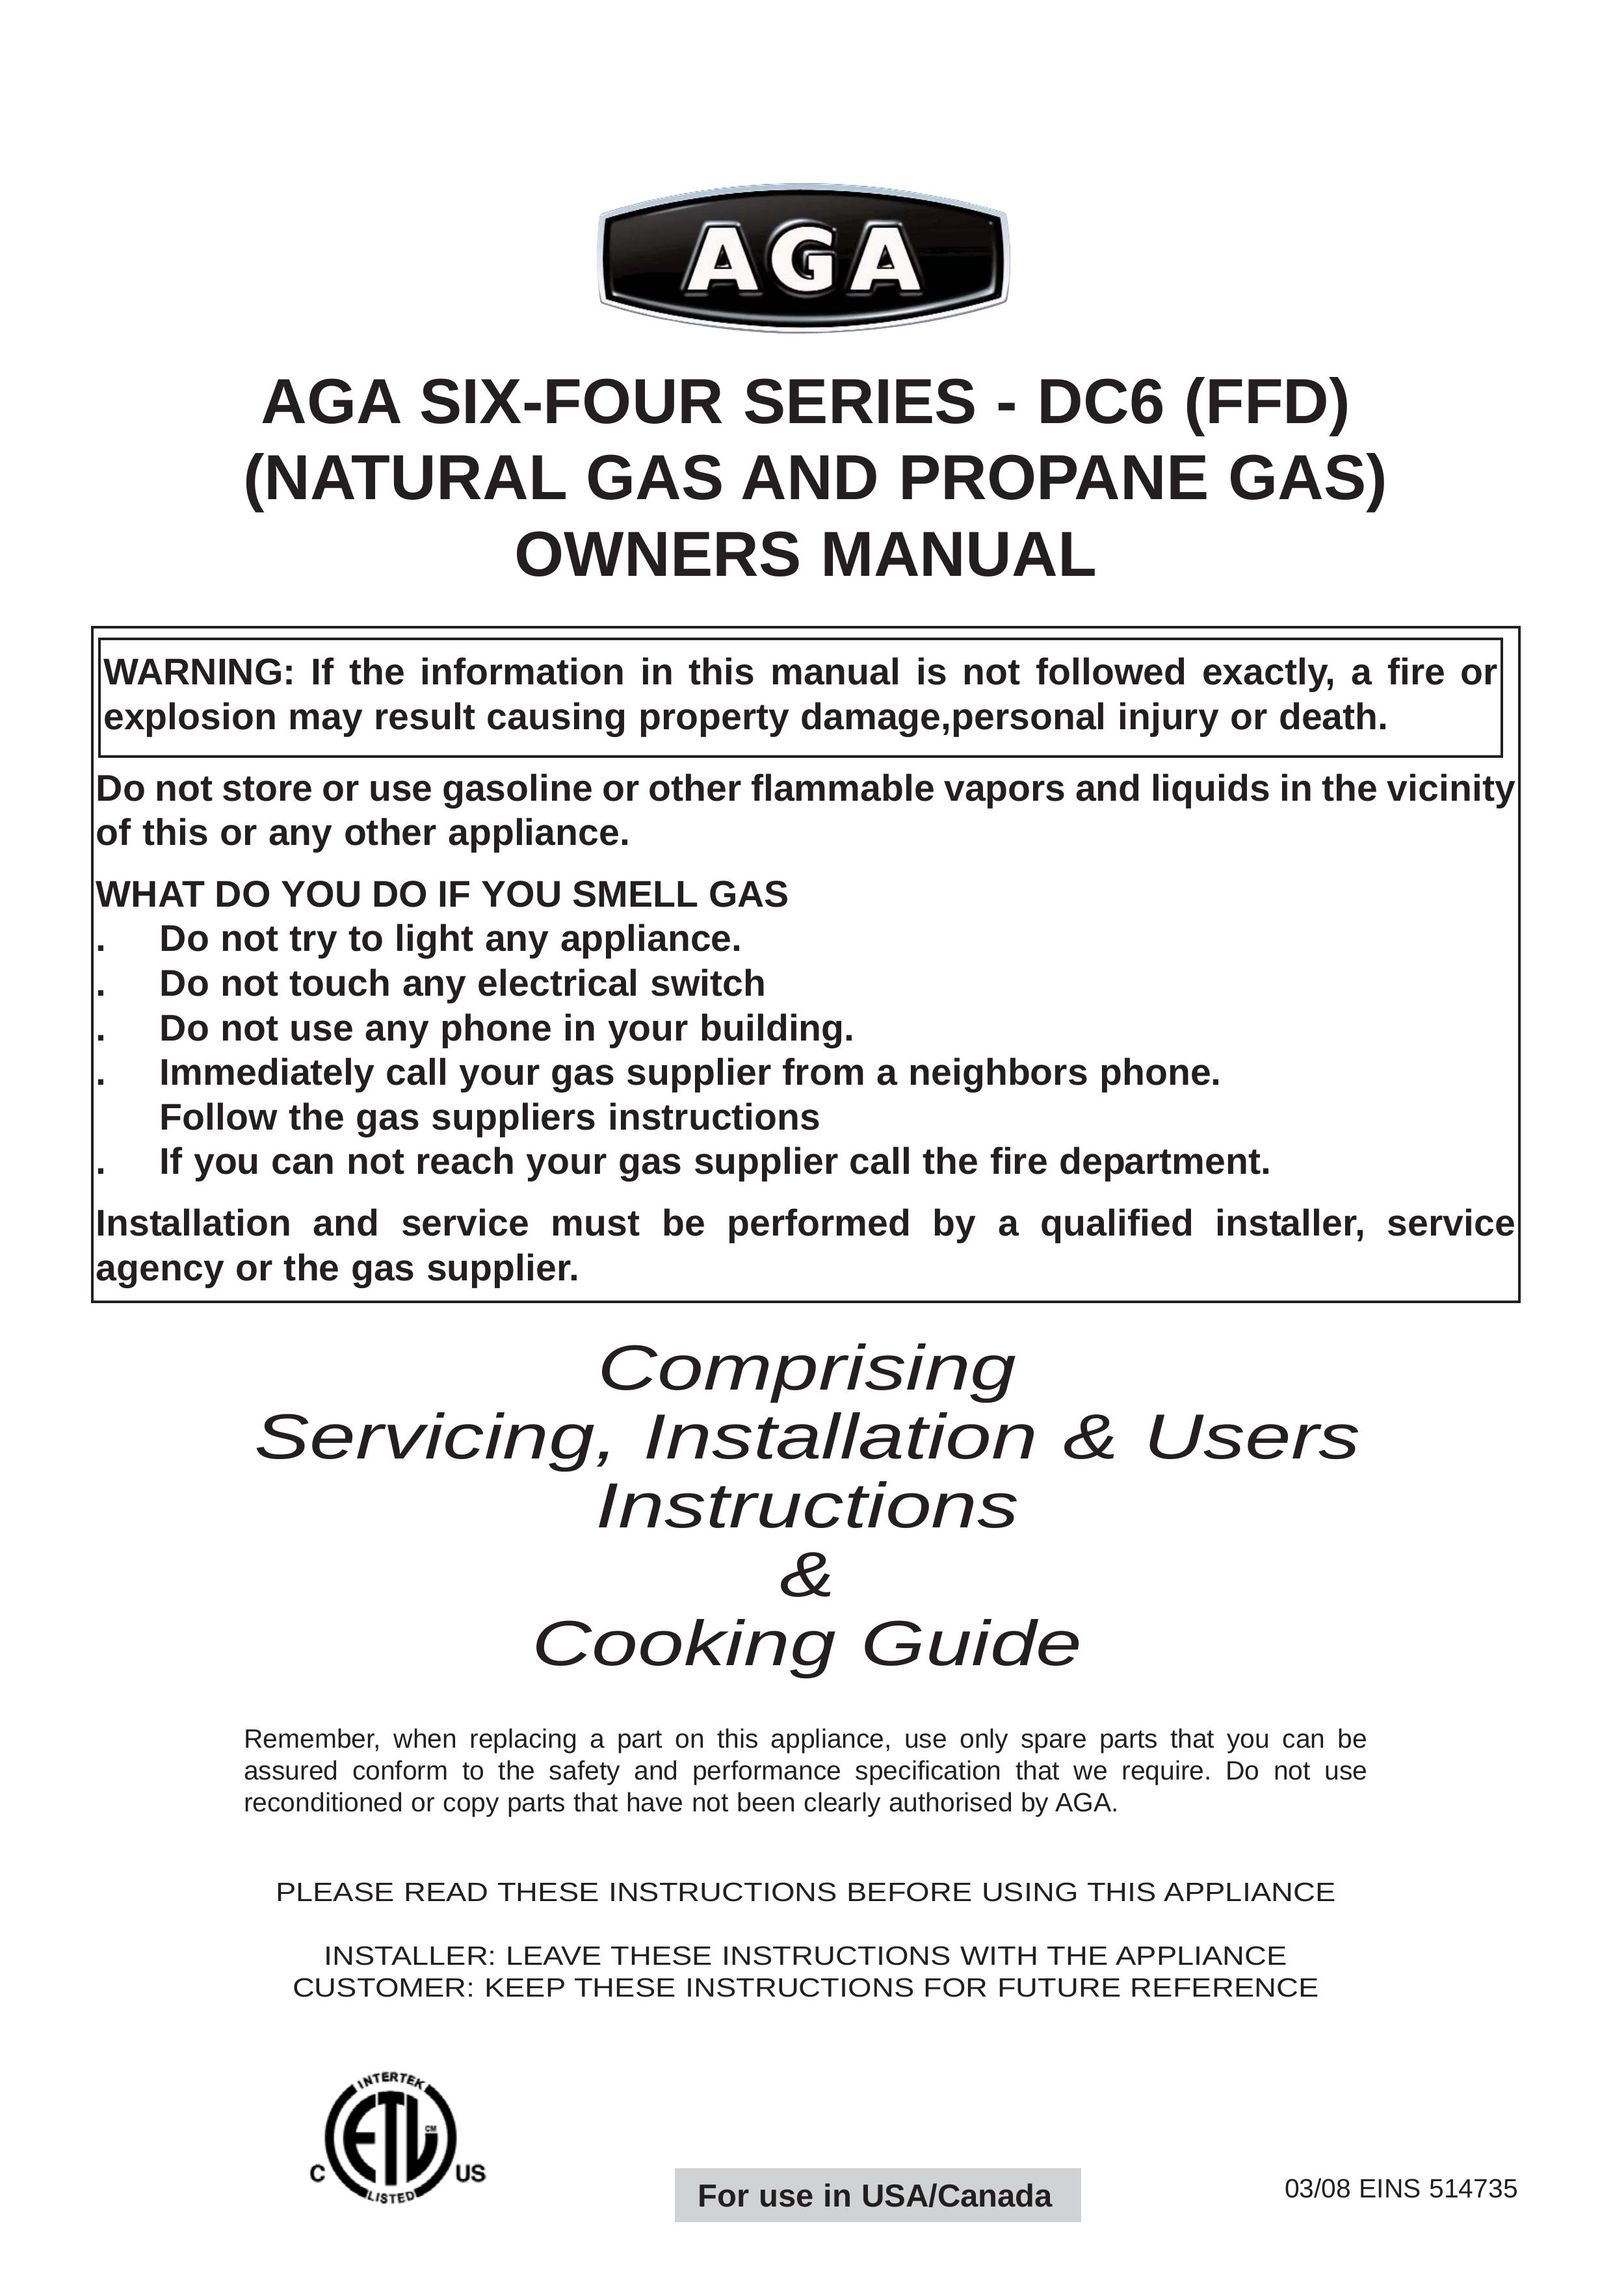 Aga Ranges 6-4 Series Cooktop User Manual